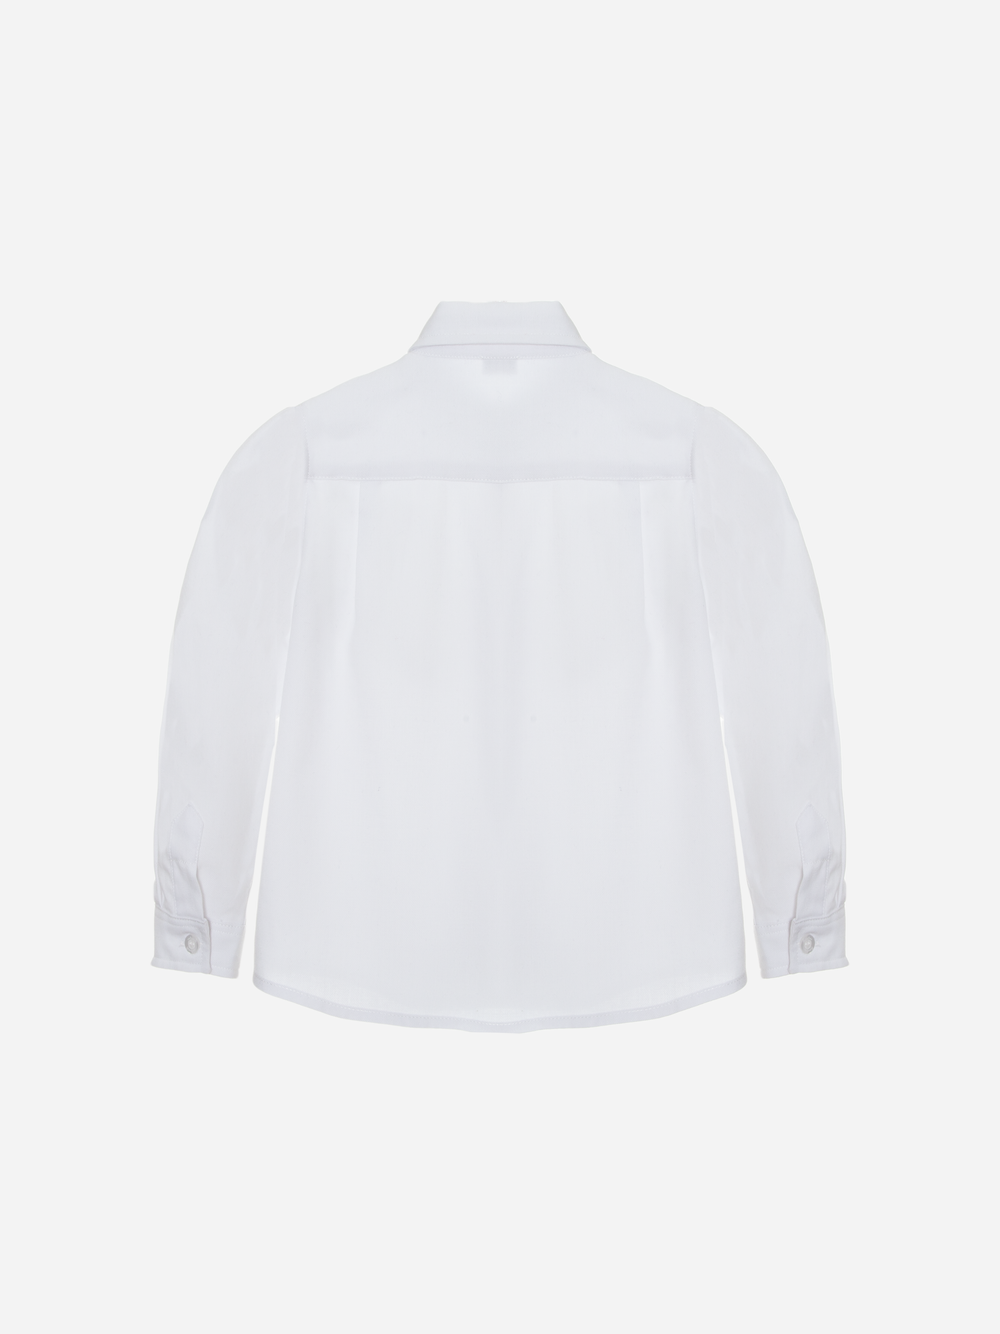 Woven Shirt White 12m - 4år